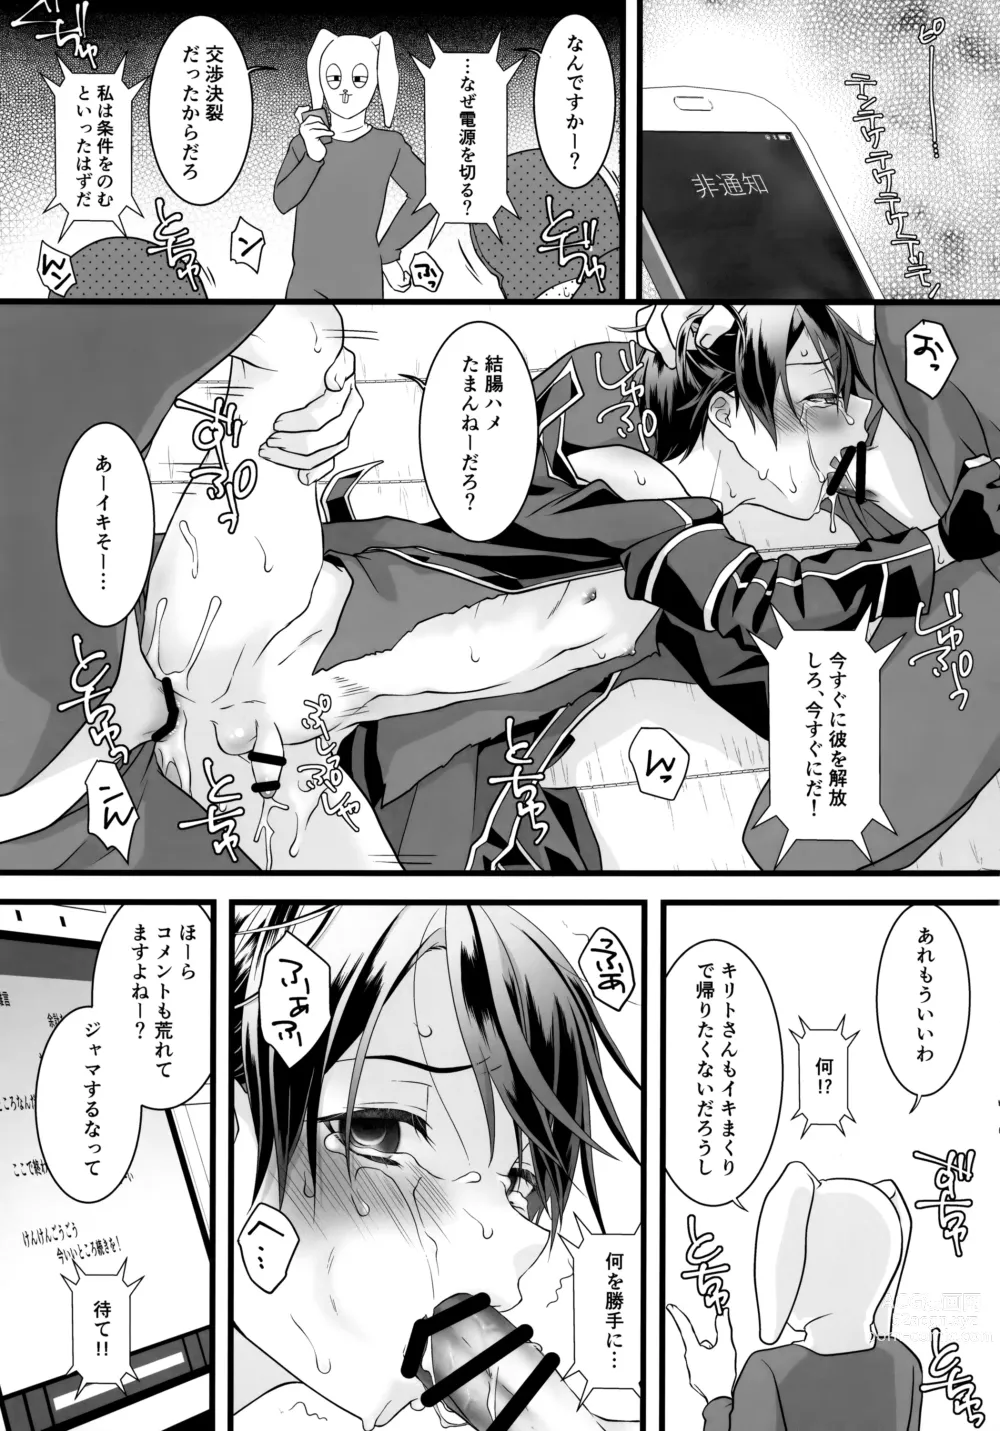 Page 84 of doujinshi NO ESCAPE